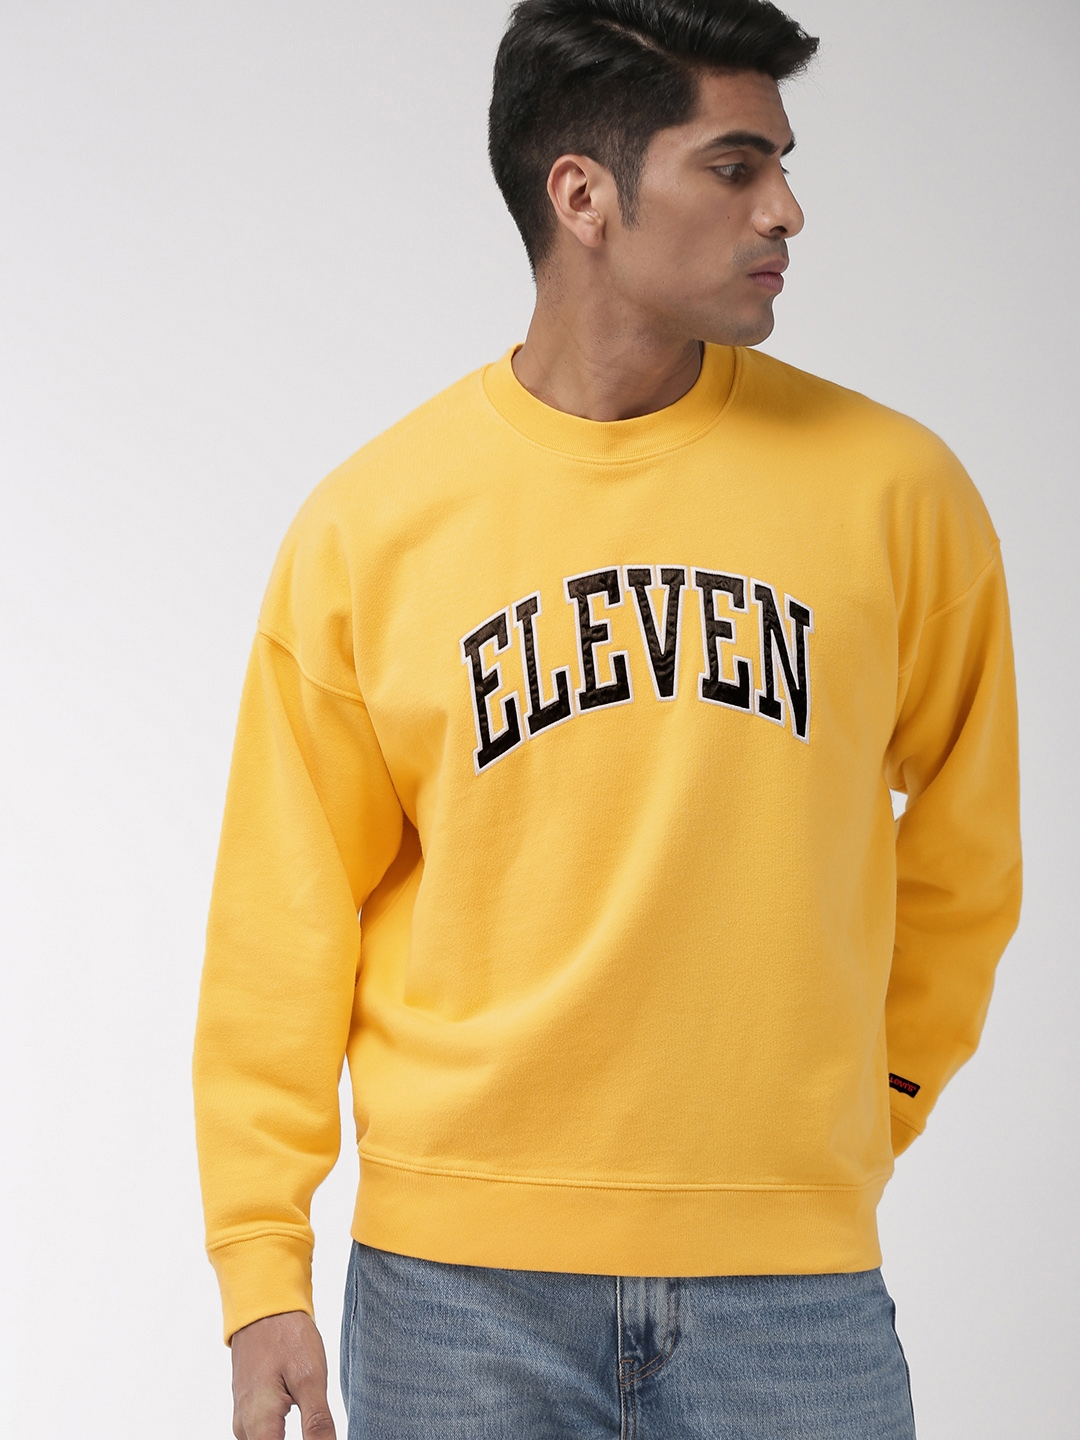 Top 73+ imagen levi's eleven sweatshirt - Thptnganamst.edu.vn